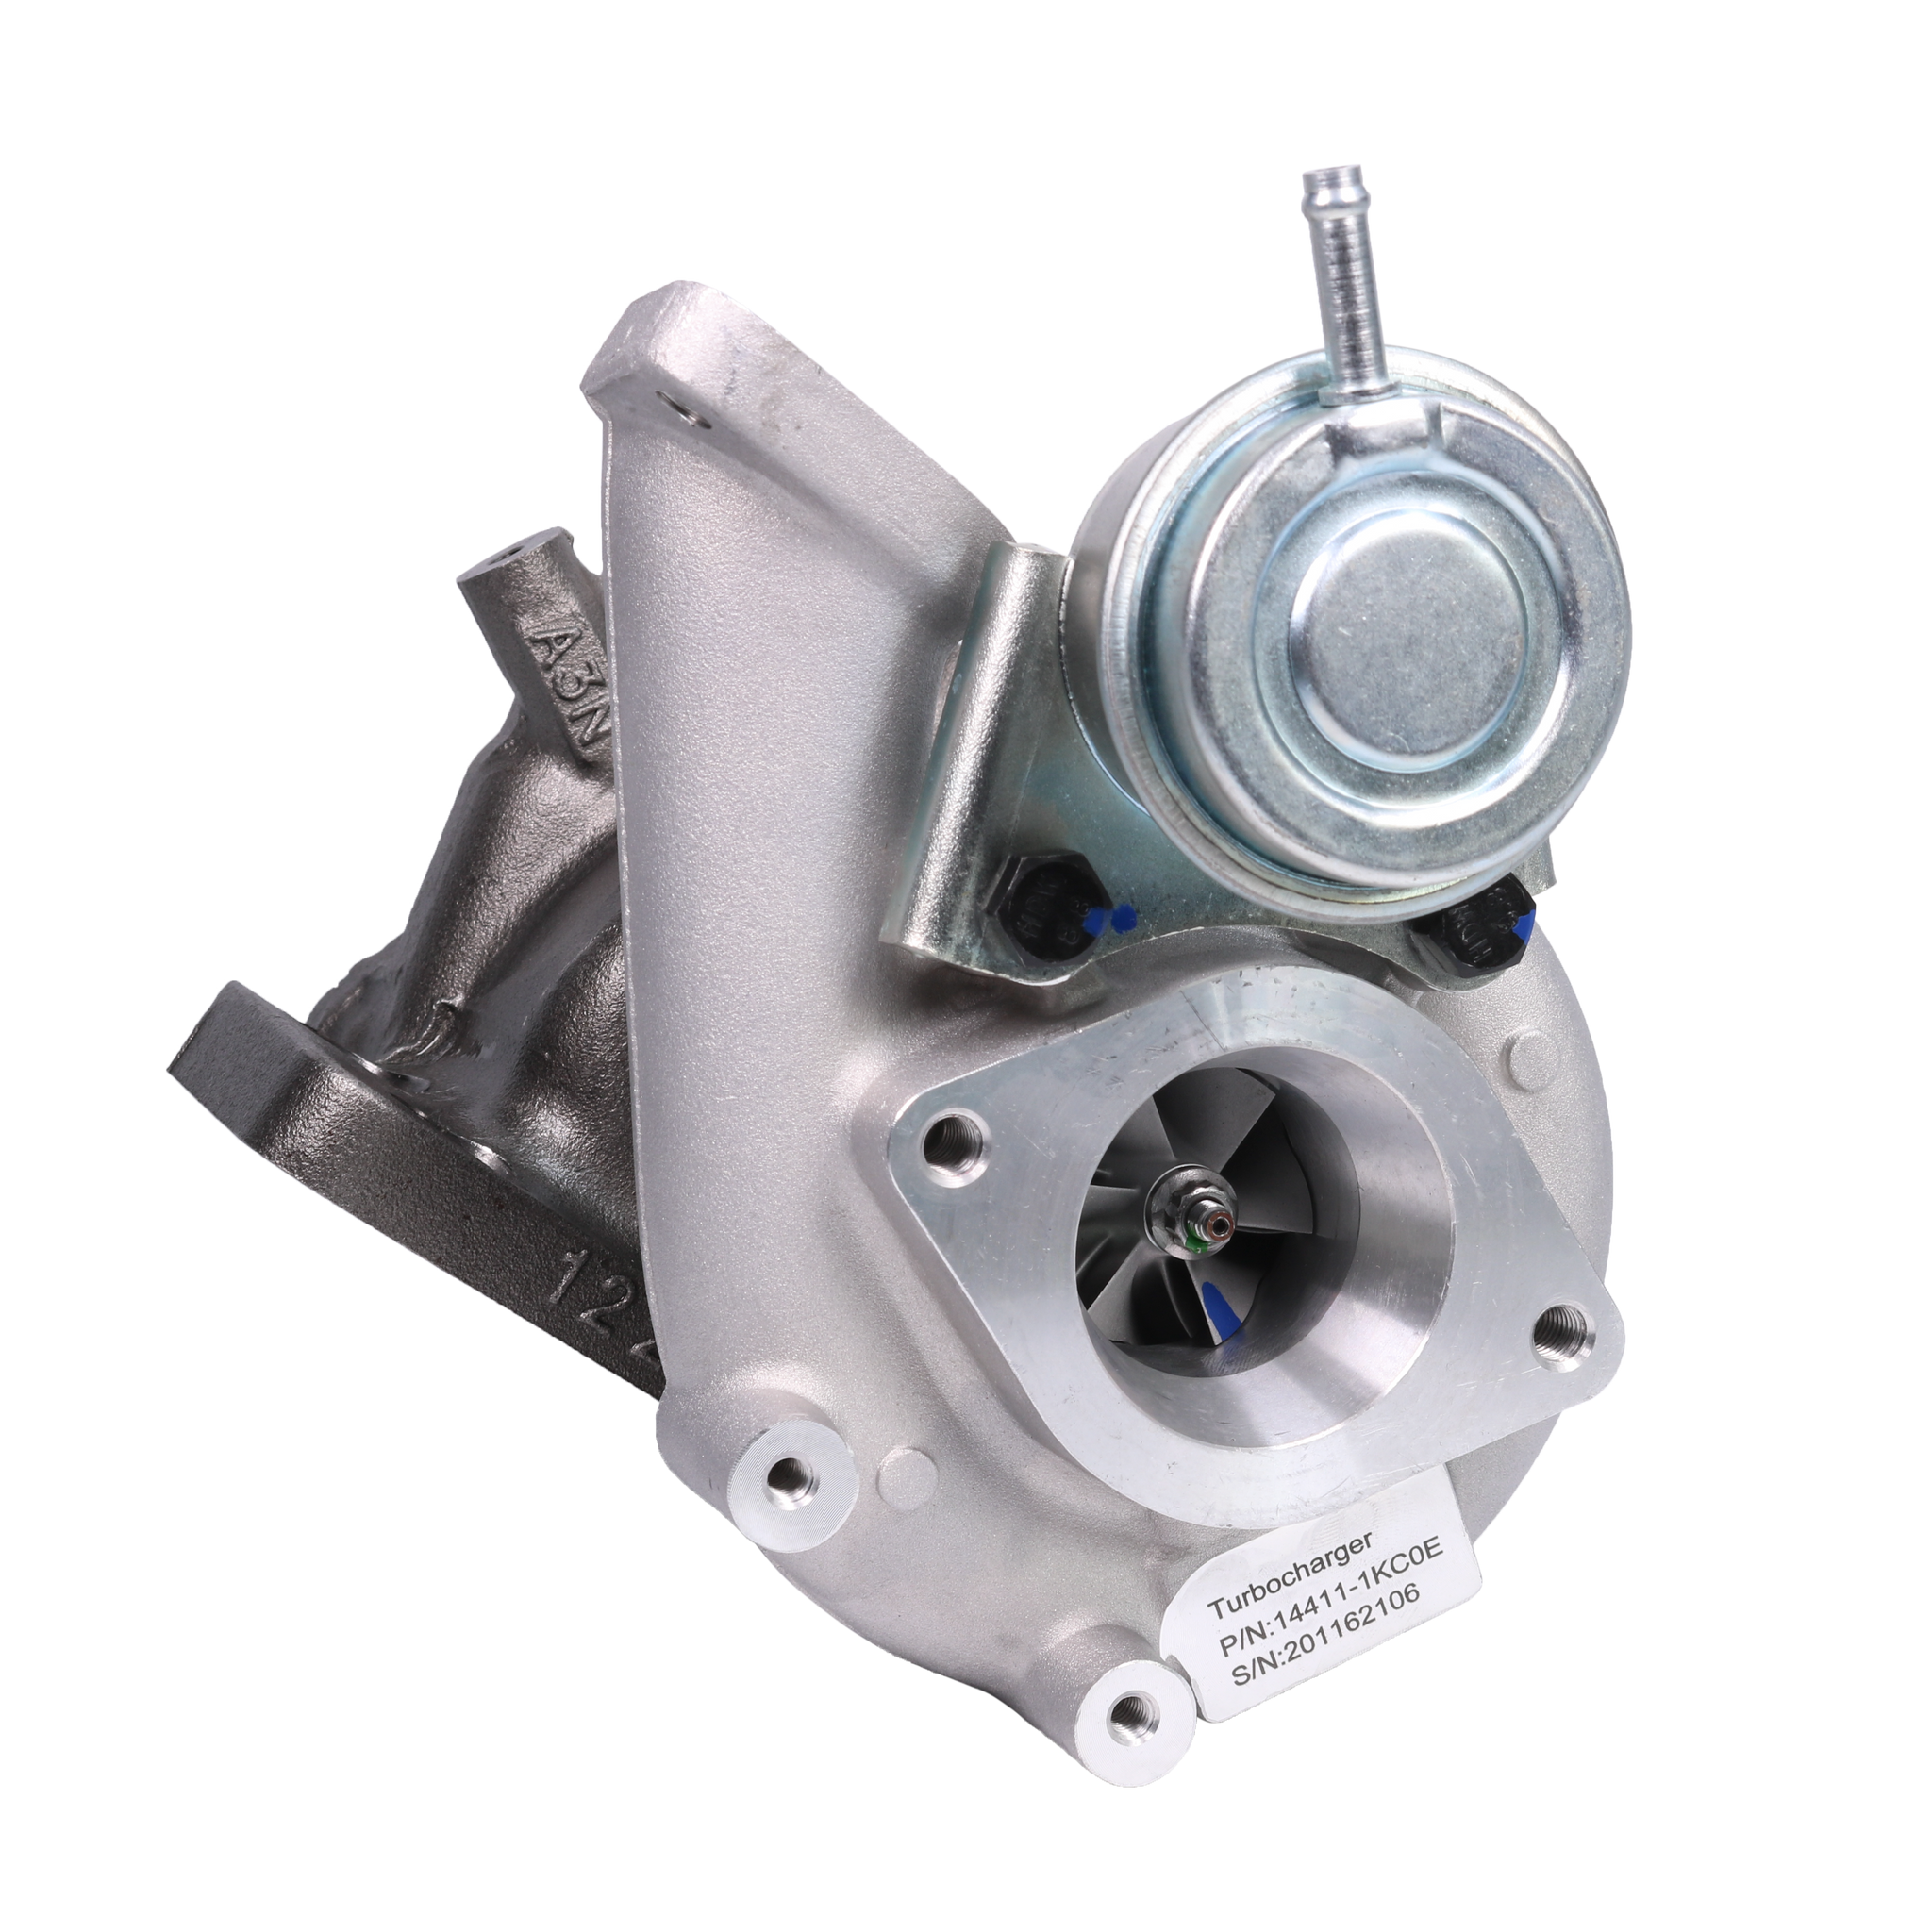 史上最も激安】 ターボチャージャー ターボターボチャージャー49335-00880日産ジューク1.6L MR16DDTエンジン2010-2016  Turbo Turbocharger 49335-00880 for Nissan Juke 1.6L MR16DDT Engine 2010-2016 